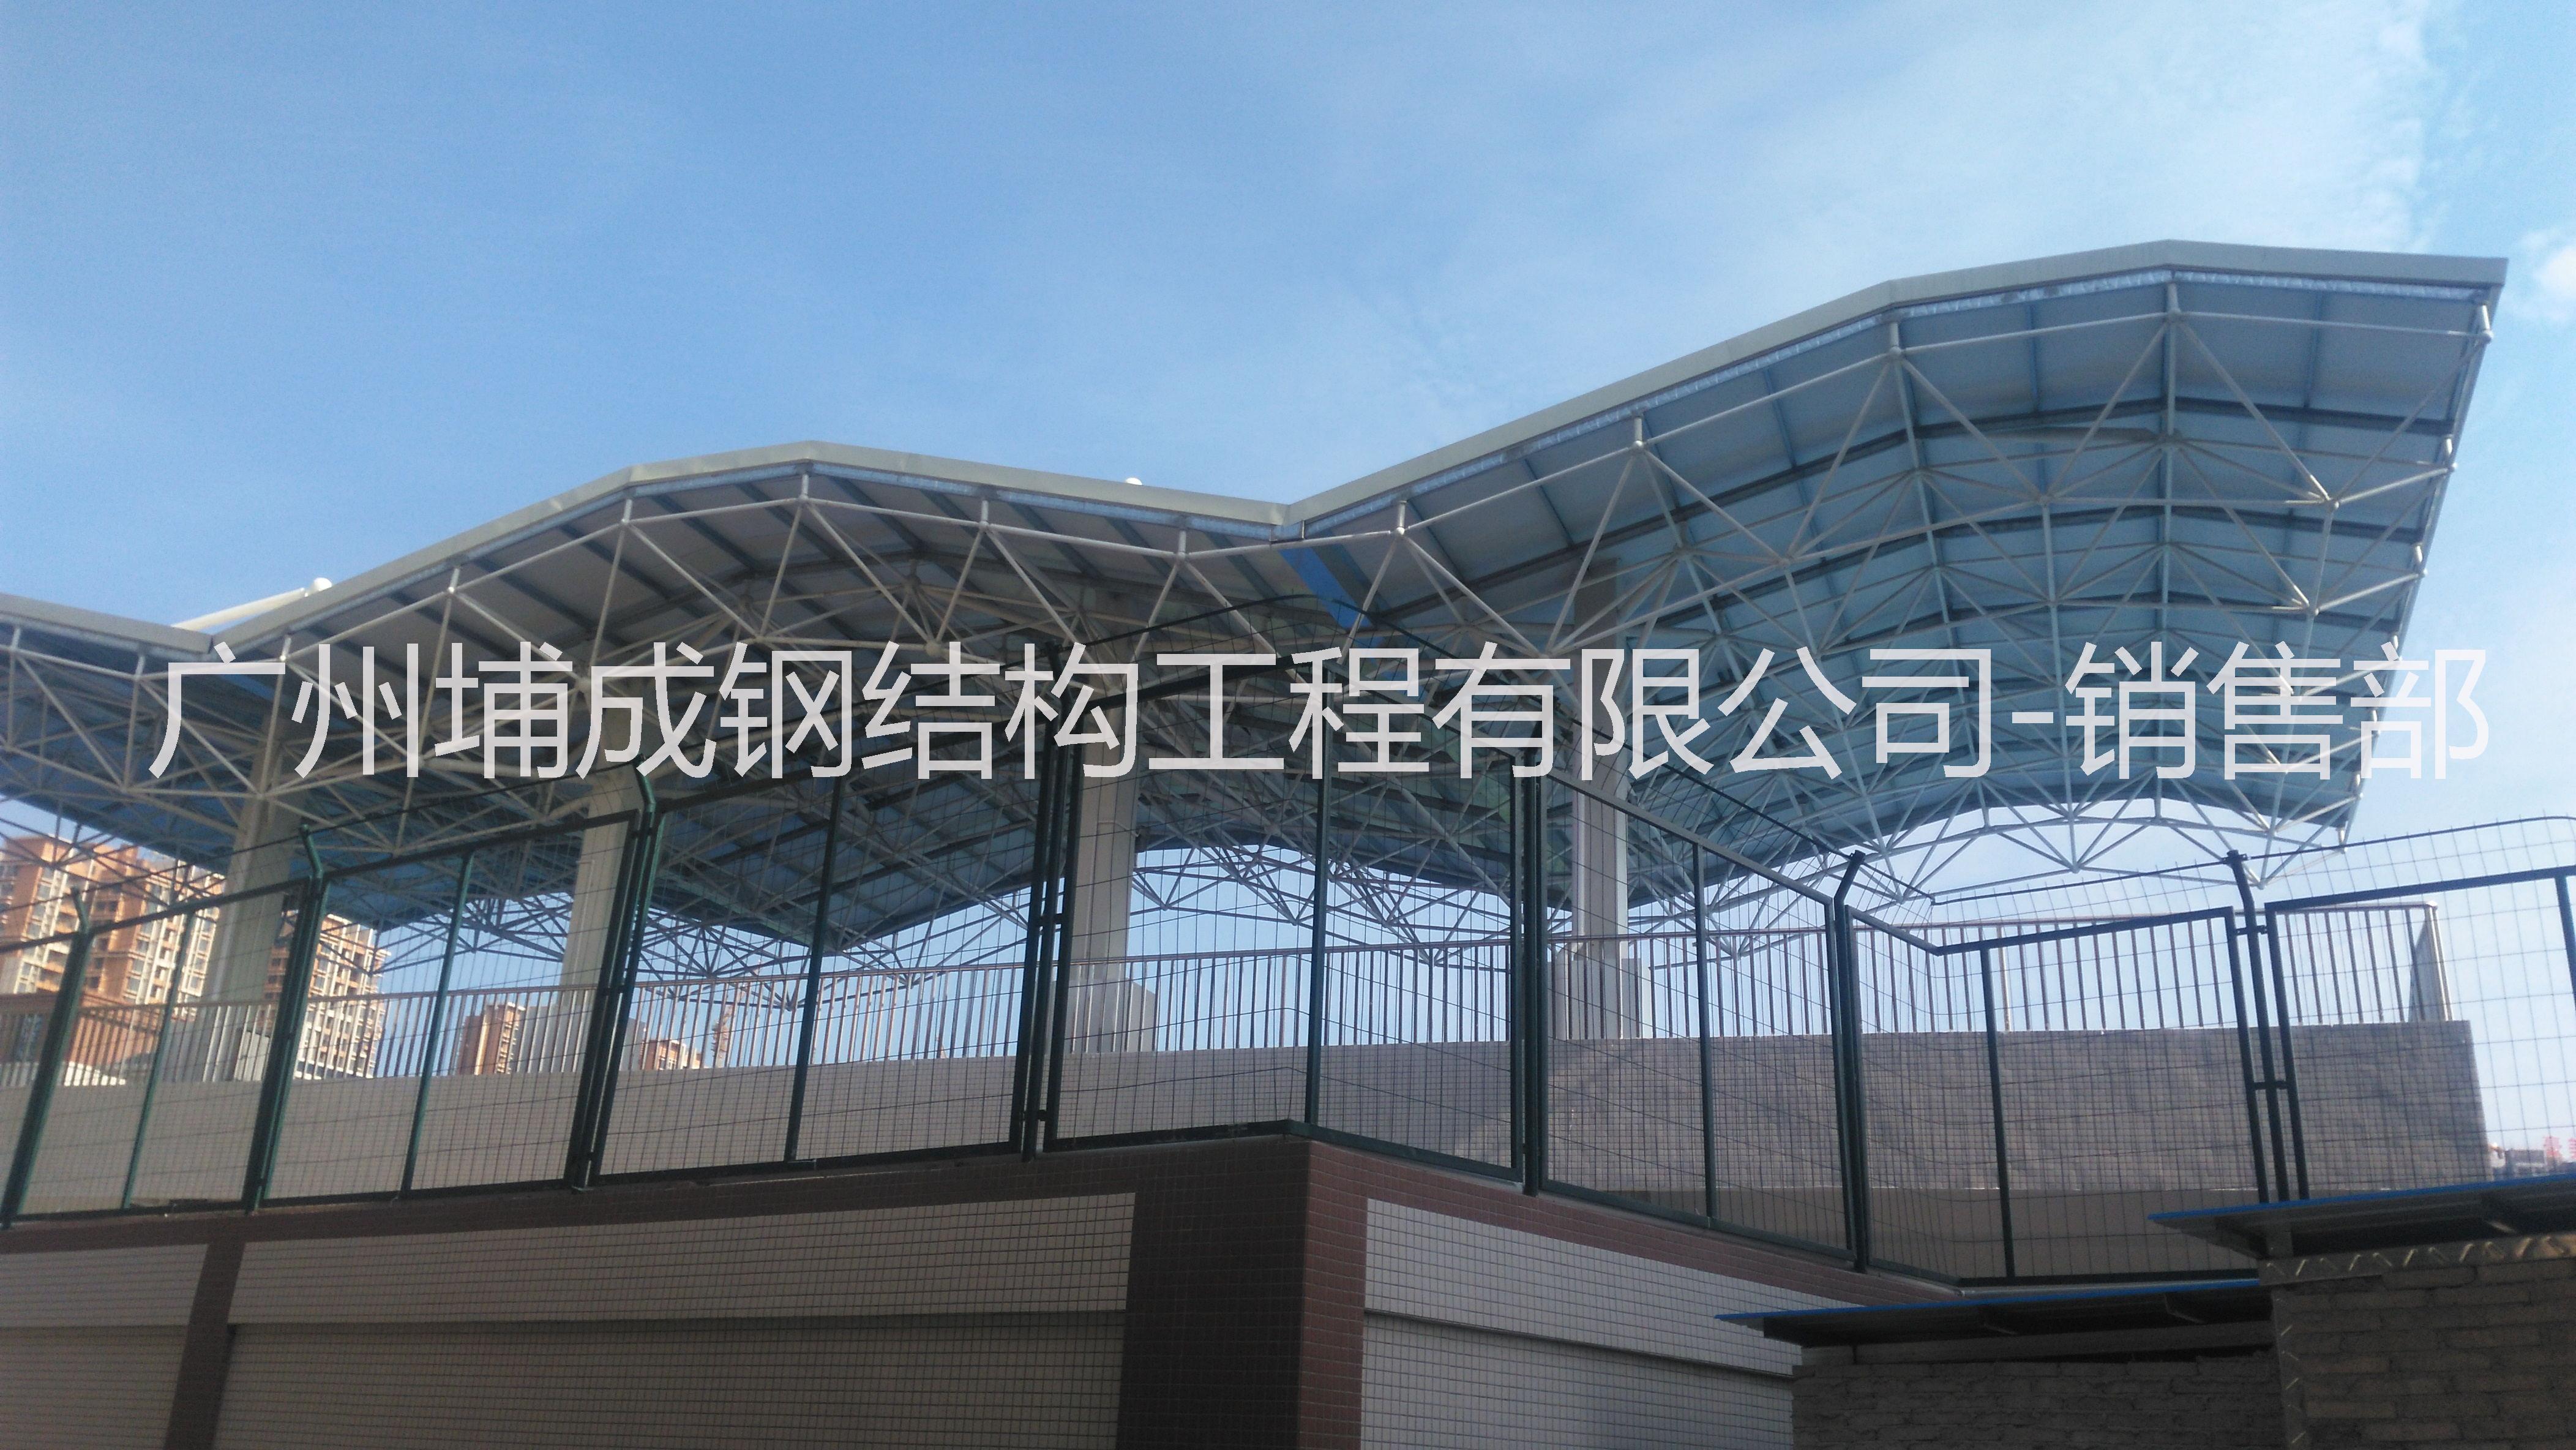 广州大型体育馆钢网架加工安装 广州学校风雨操场网架工程图片